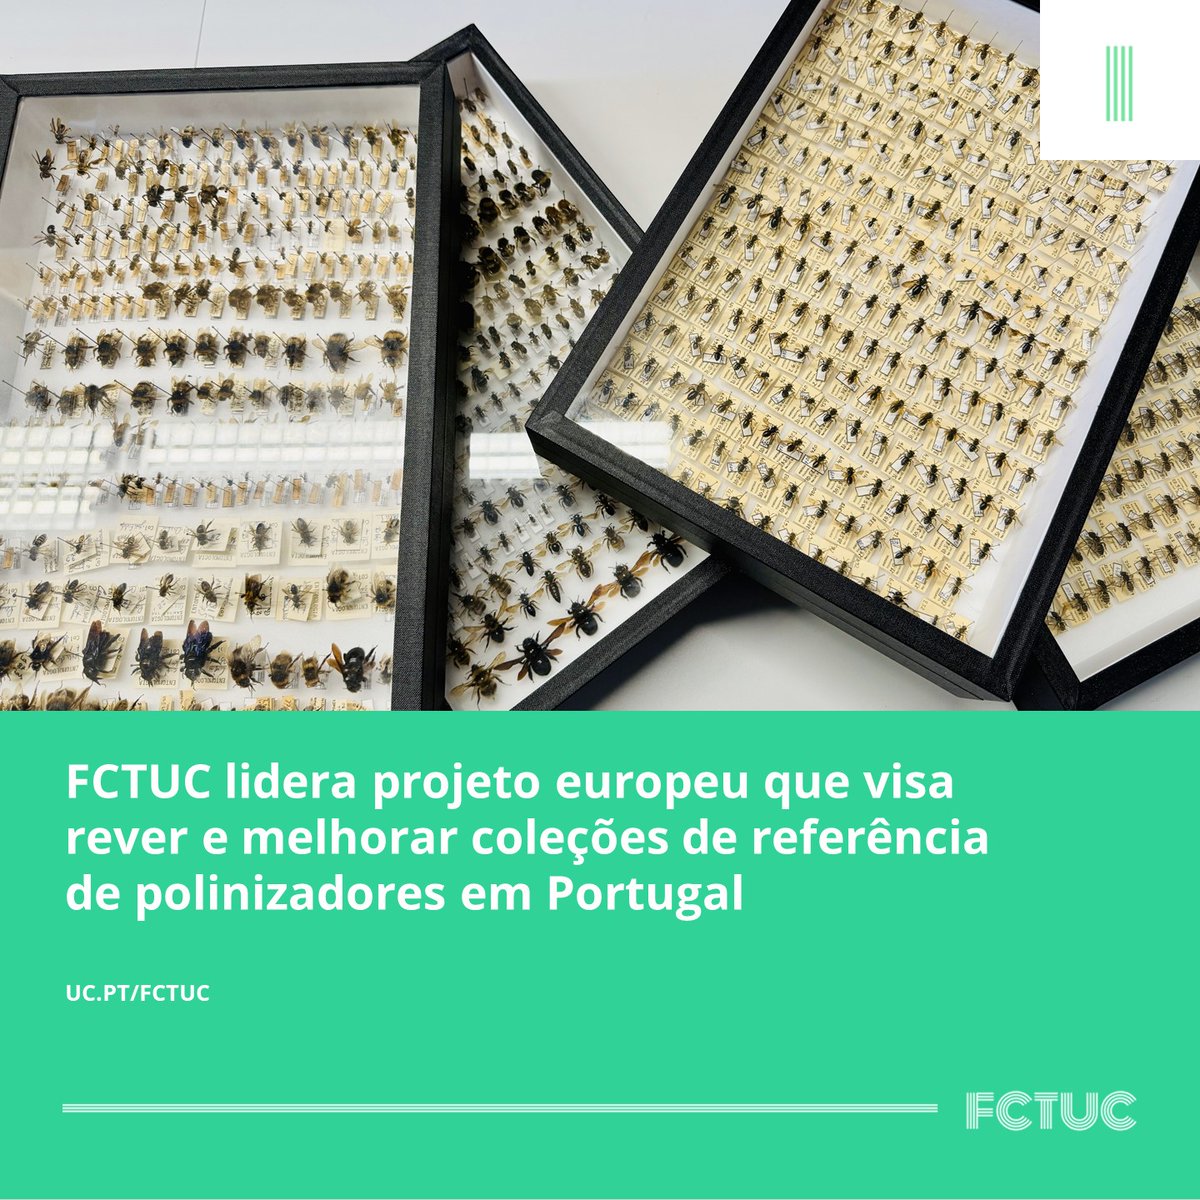 🐝FCTUC lidera projeto europeu que visa rever e melhorar coleções de referência de polinizadores em Portugal. Para mais informações consultar o seguinte link: uc.pt/fctuc/noticias…